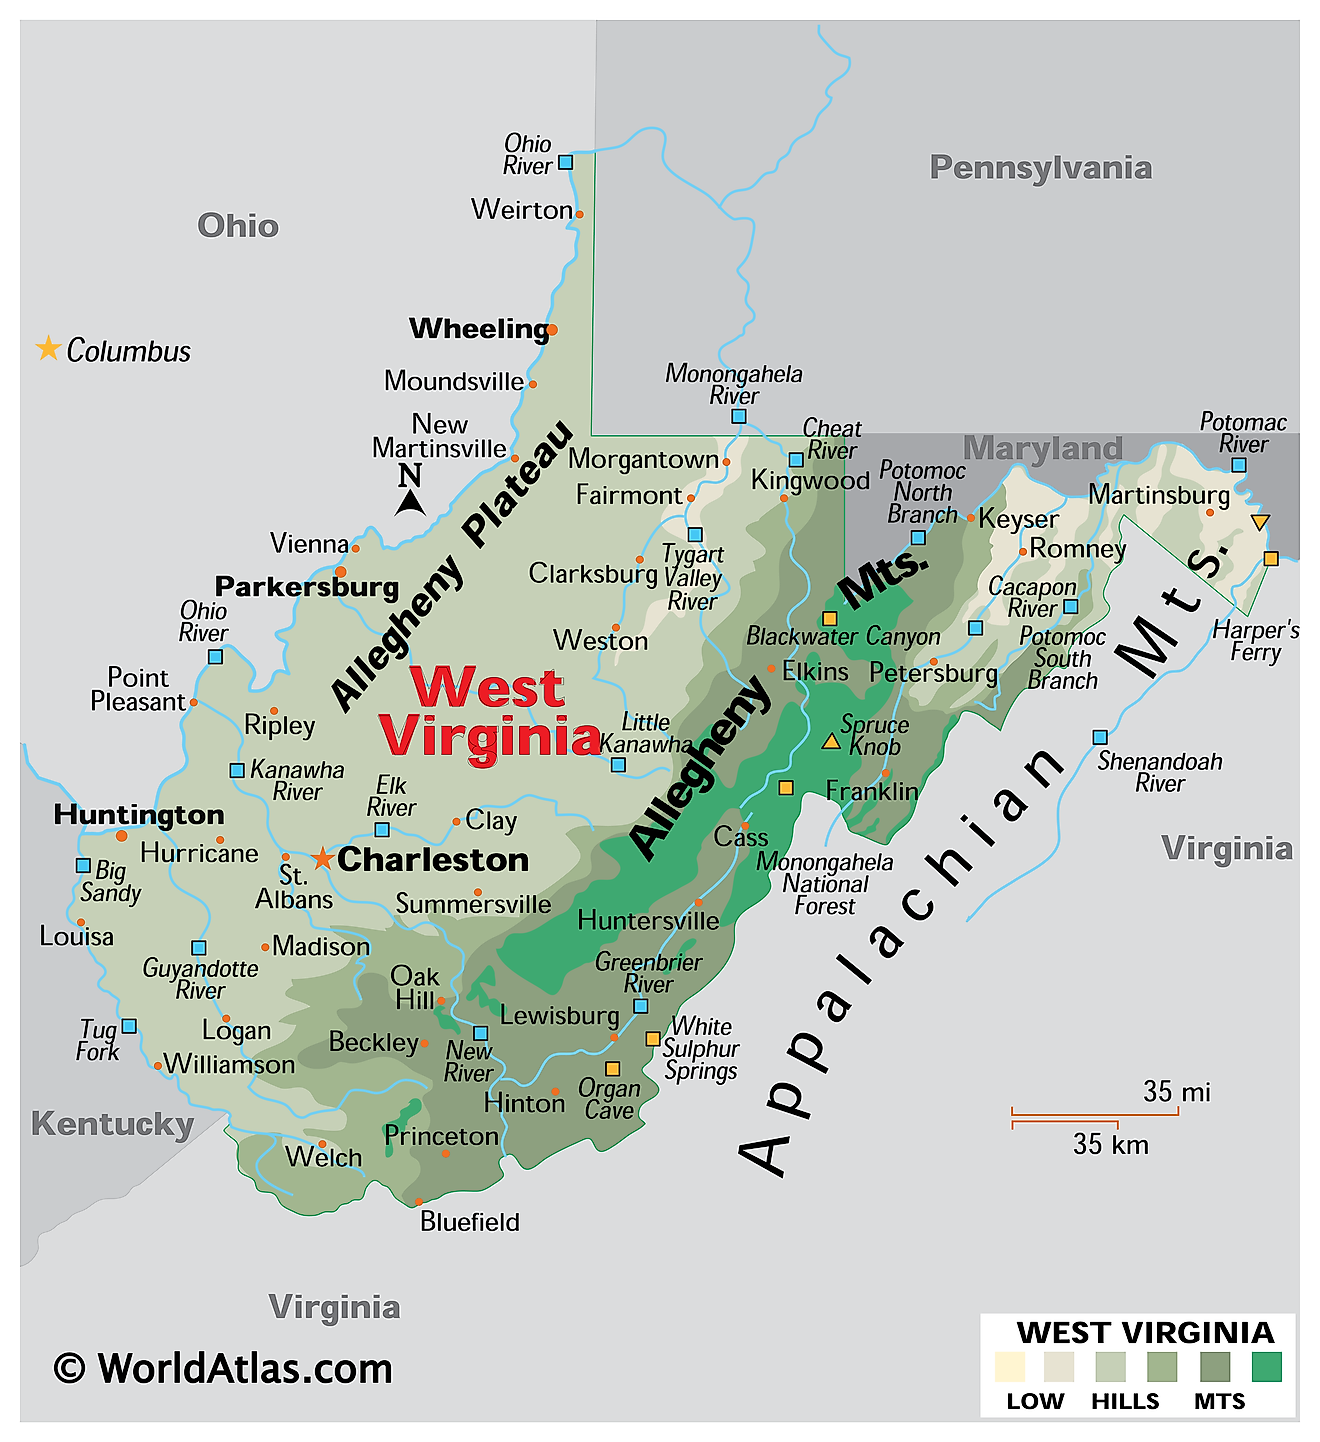 harta fizică a Virginiei de vest. Prezintă caracteristicile fizice ale Virginiei de Vest, inclusiv lanțurile sale montane, platourile și râurile majore.